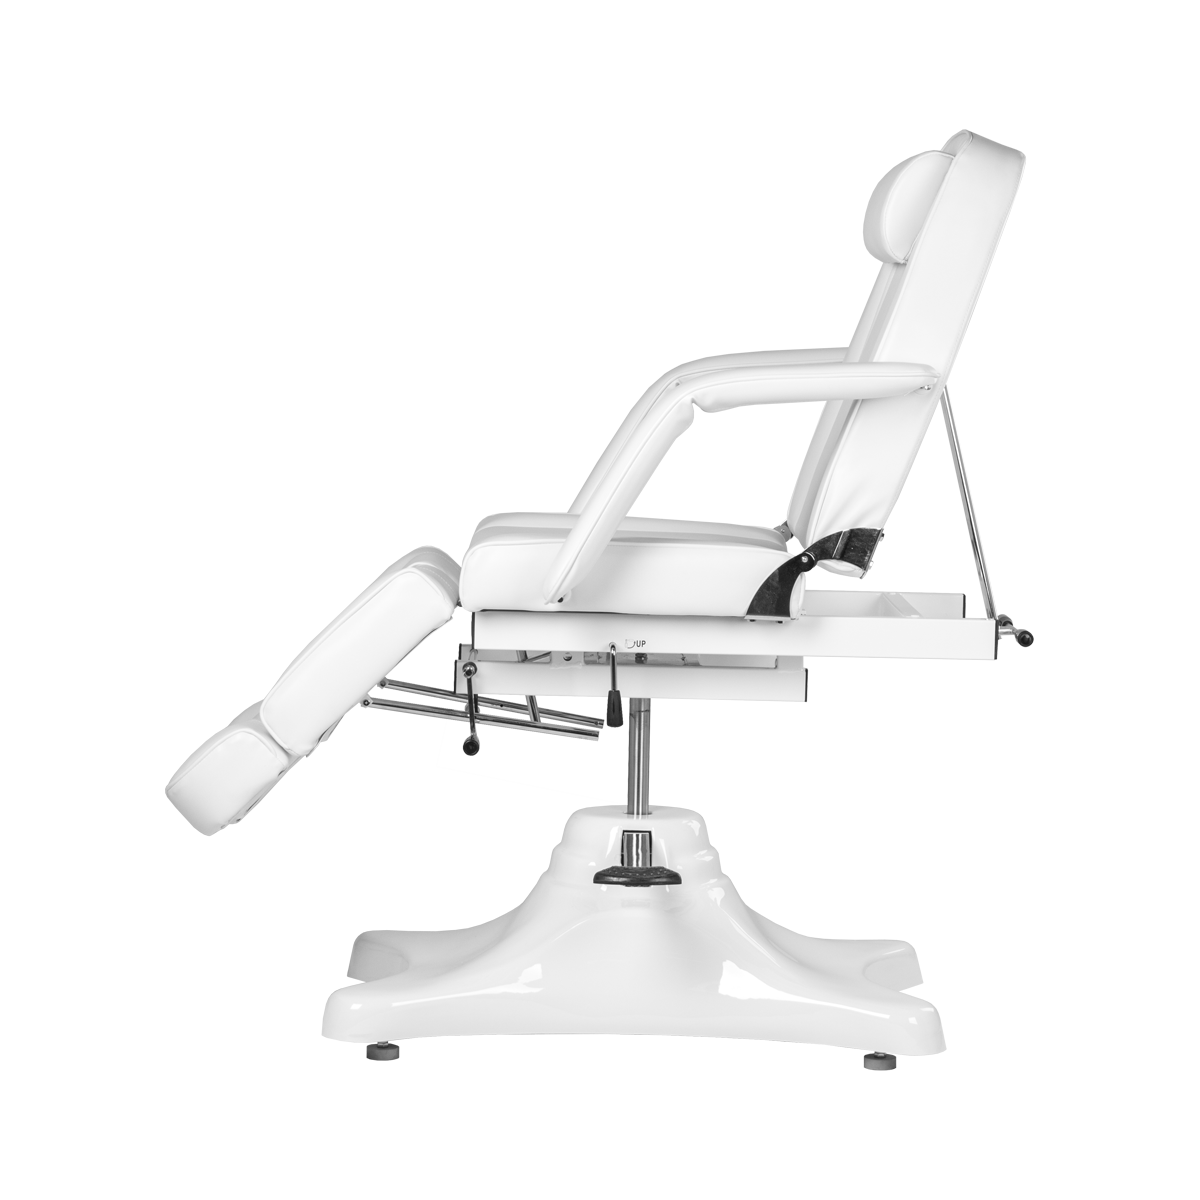 Педикюрное кресло МД-823А, гидравлика - 10 